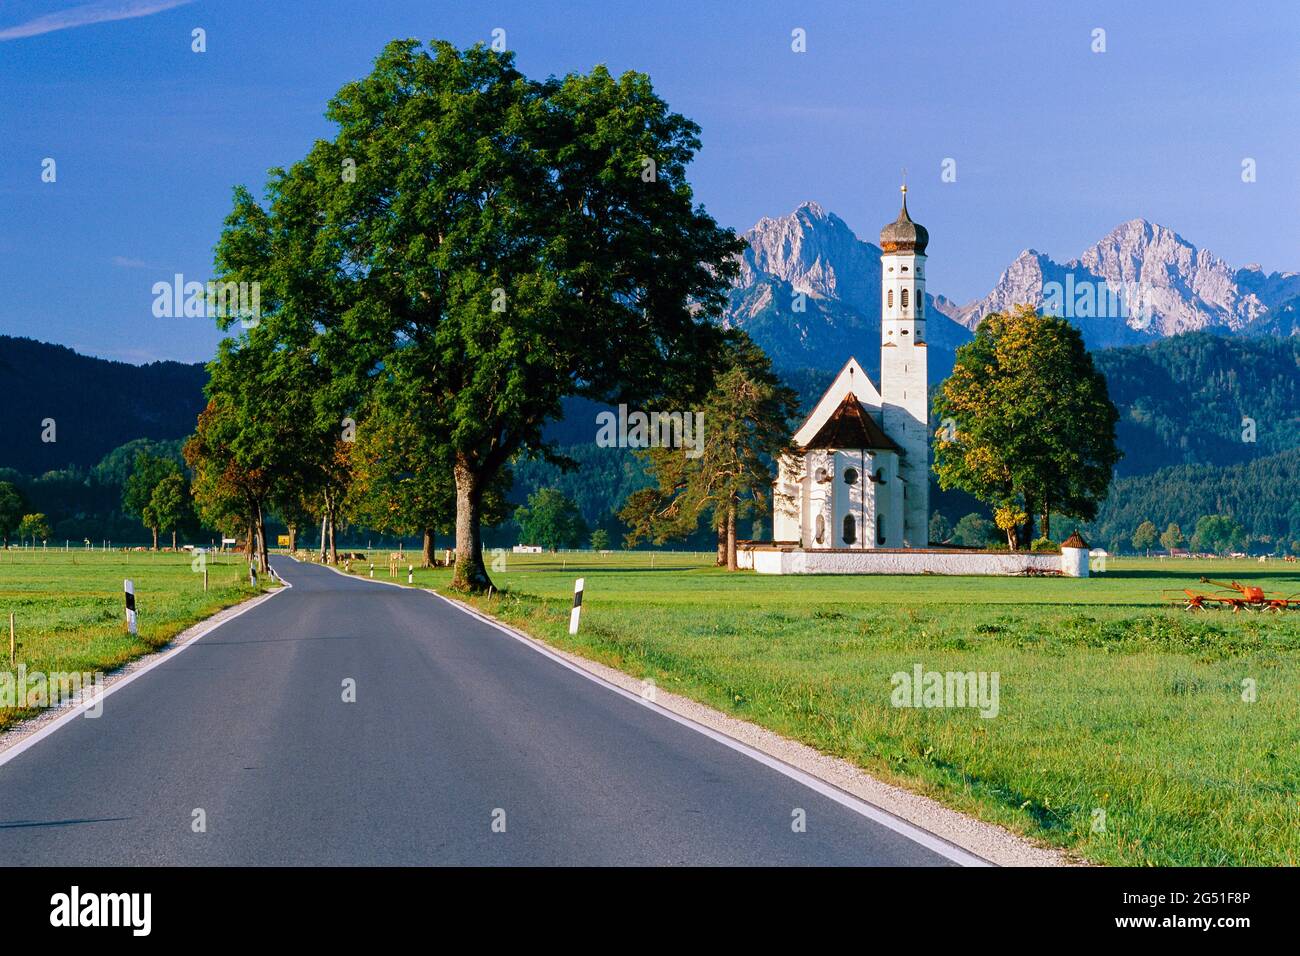 Paisaje con carretera e iglesia, Alemania Foto de stock